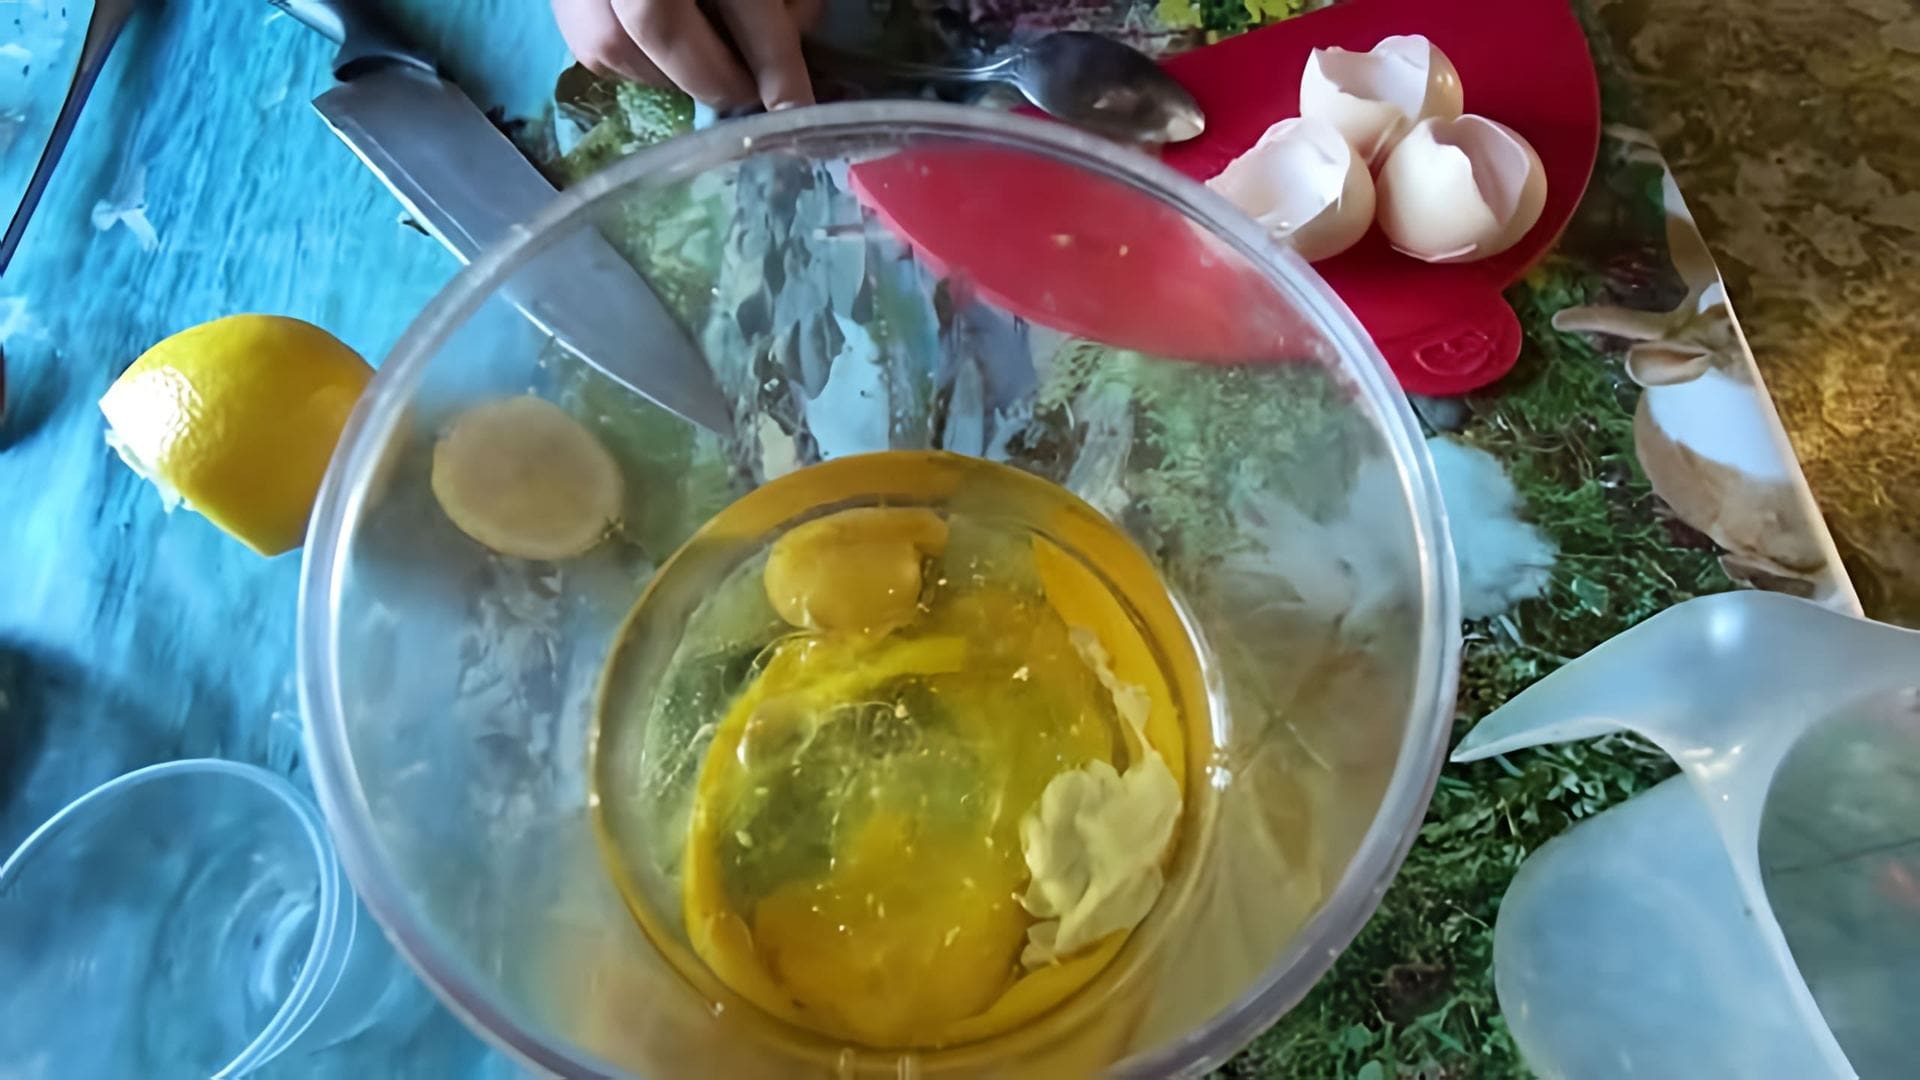 В данном видео демонстрируется рецепт домашнего майонеза, который готовится всего за 3 минуты